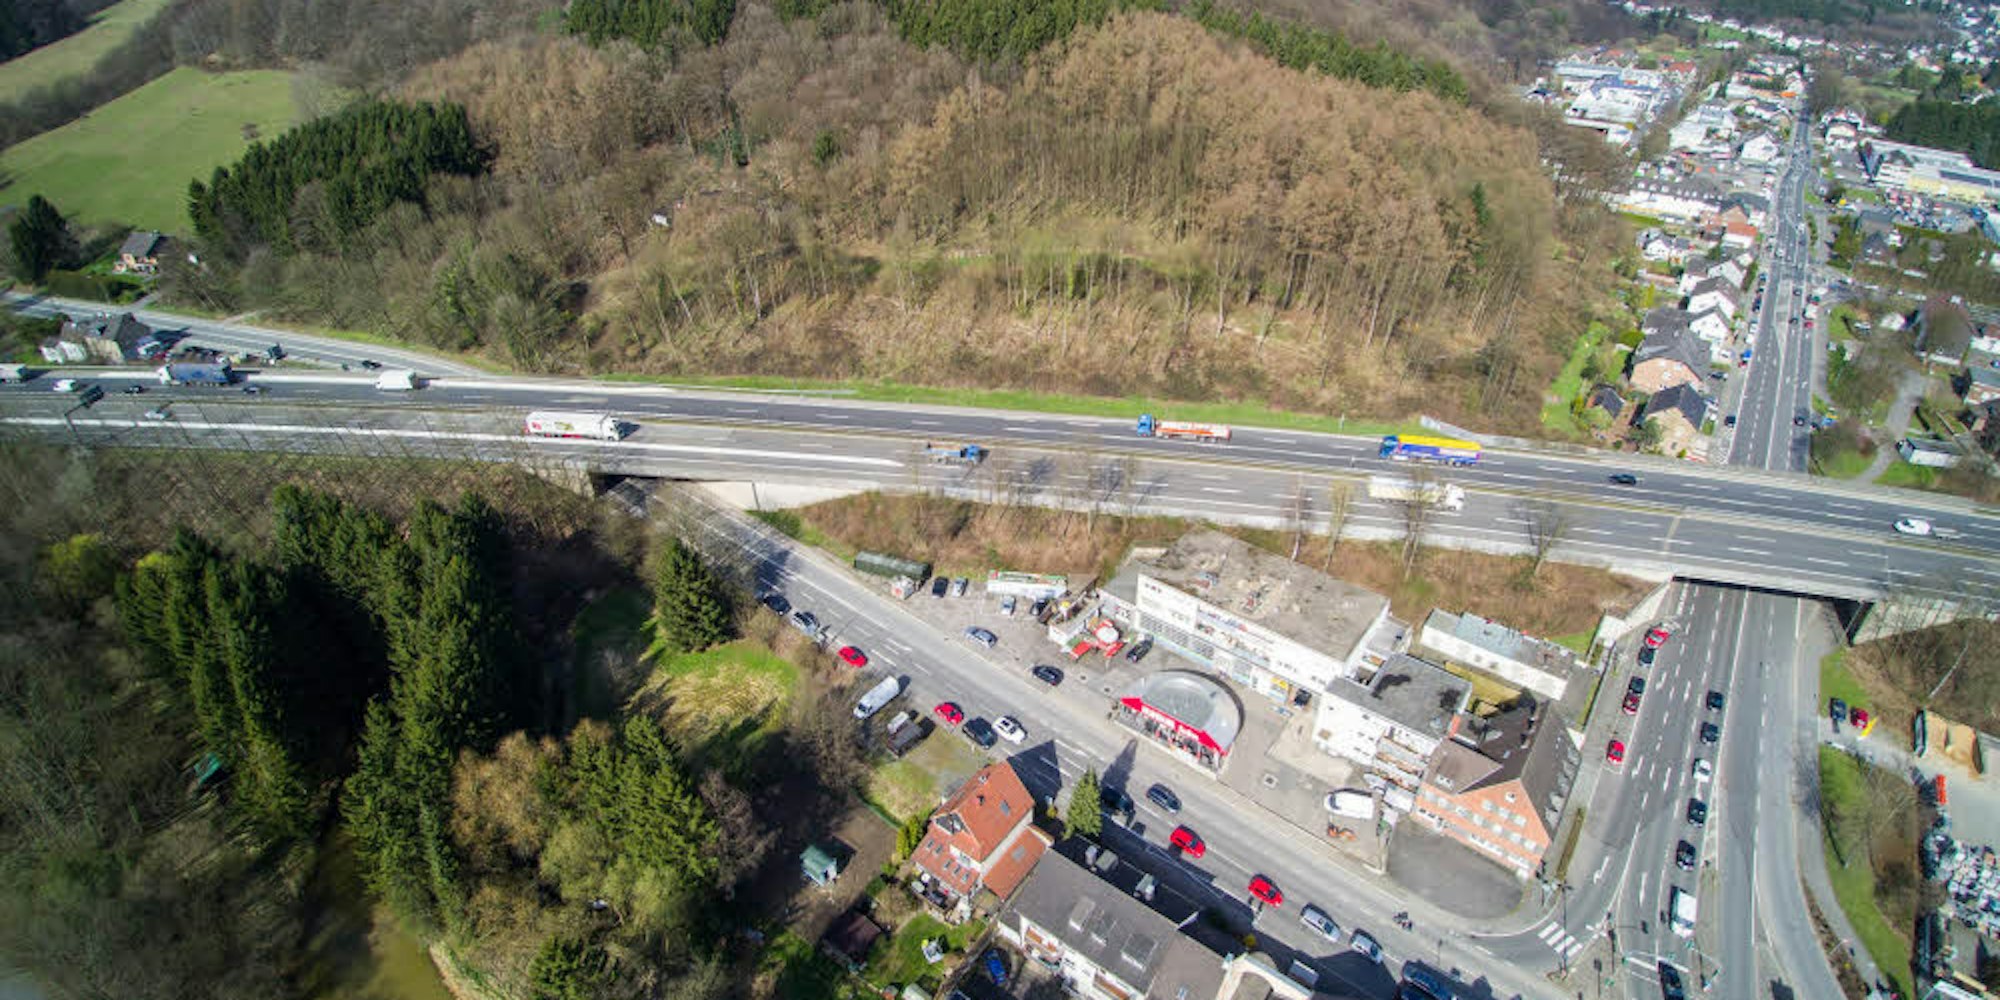 Die Autobahnbrücke links im Bild muss erneuert werden. Unter ihr verläuft die Straße von Untereschbach (u. r.) nach Bensberg. Direkt an der maroden Brücke ist wenig Platz für Behelfsbrücken wegen angrenzender Häuser und eines steilen Hangs auf der hinteren Seite.